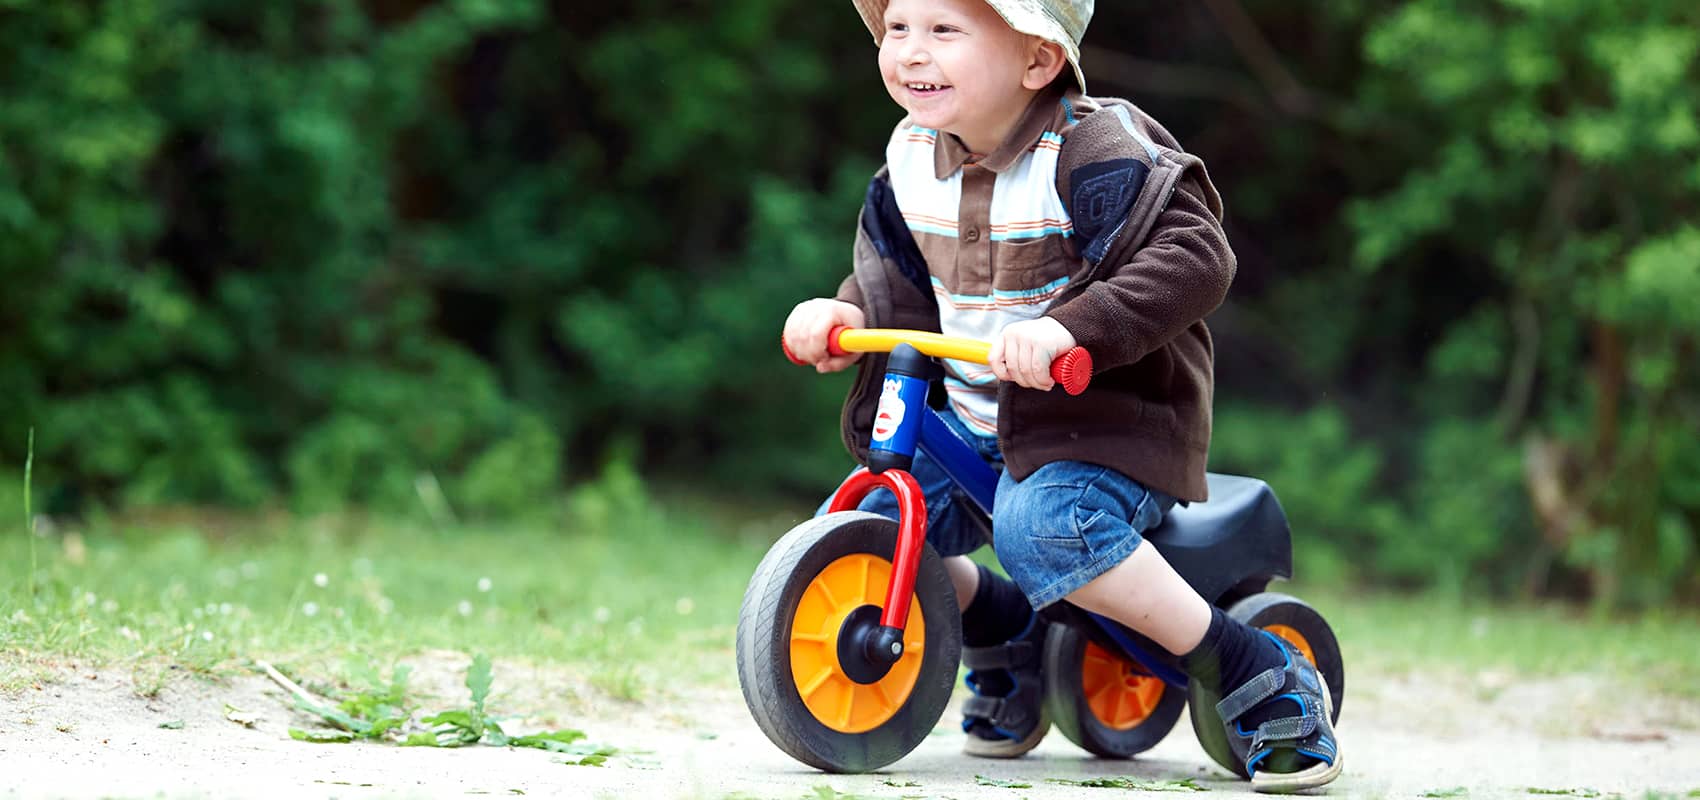 Bicicletas, triciclos y patinetes para que los niños disfruten del